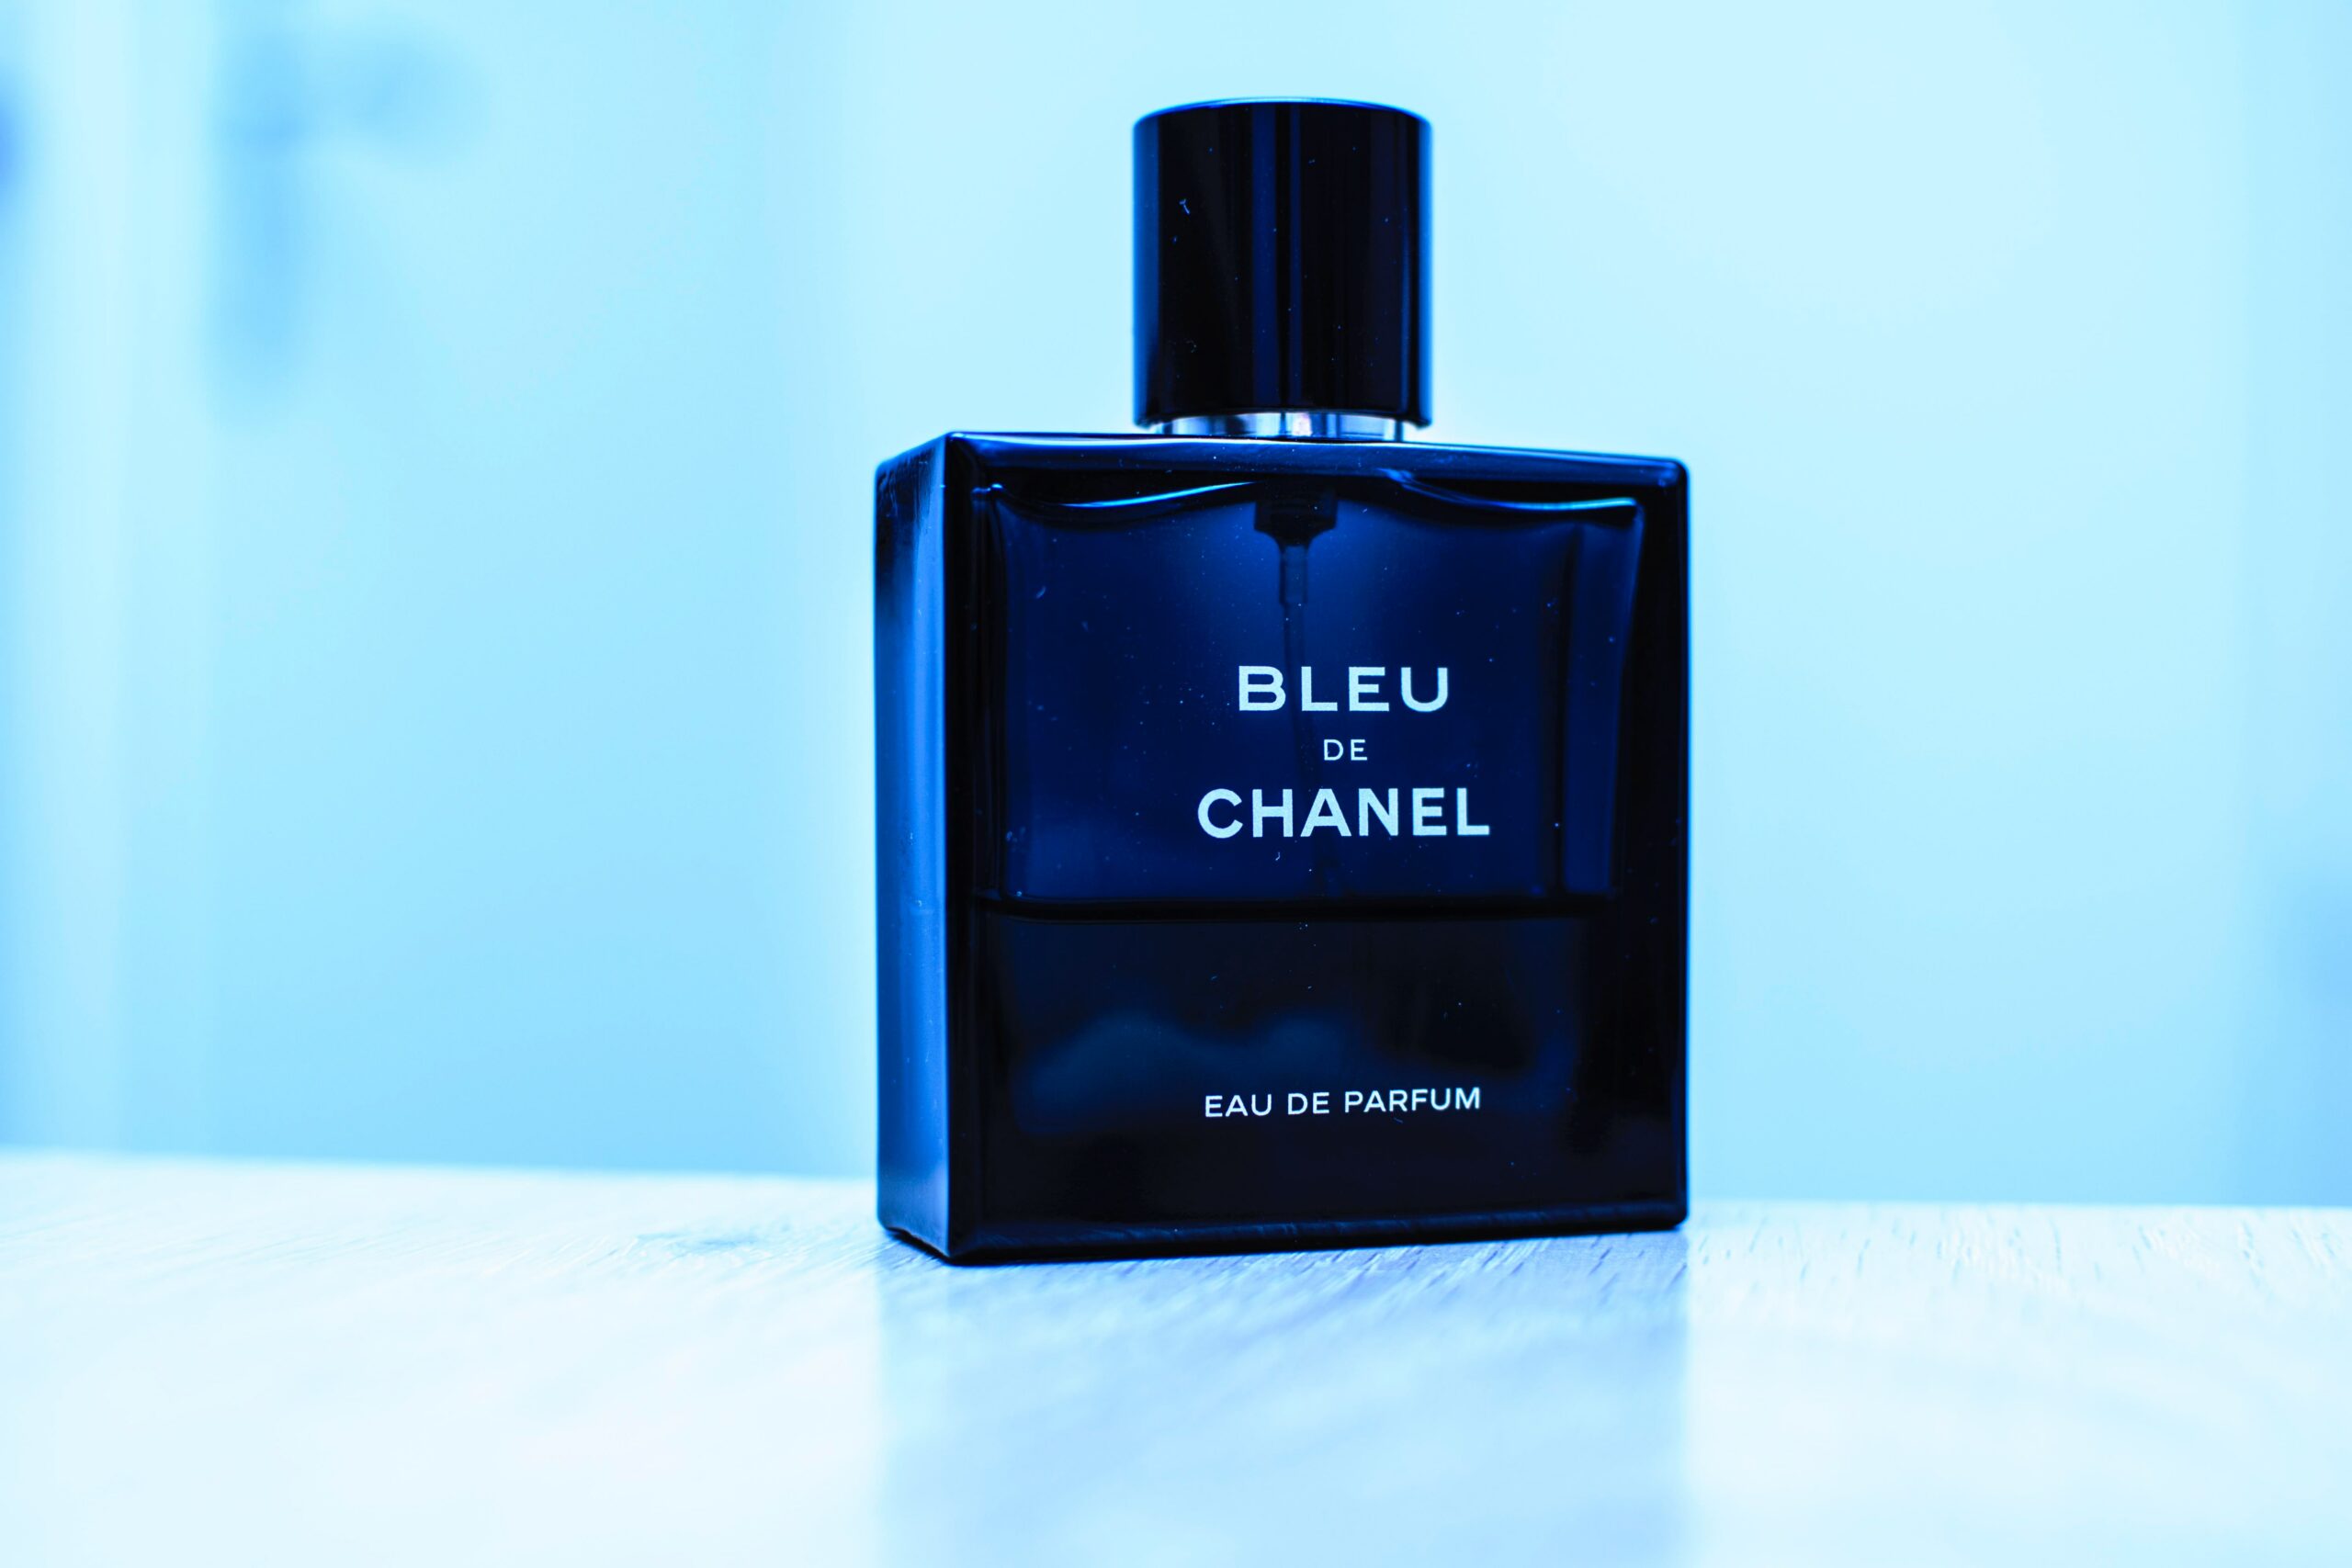 clothedup perfume.com reviews